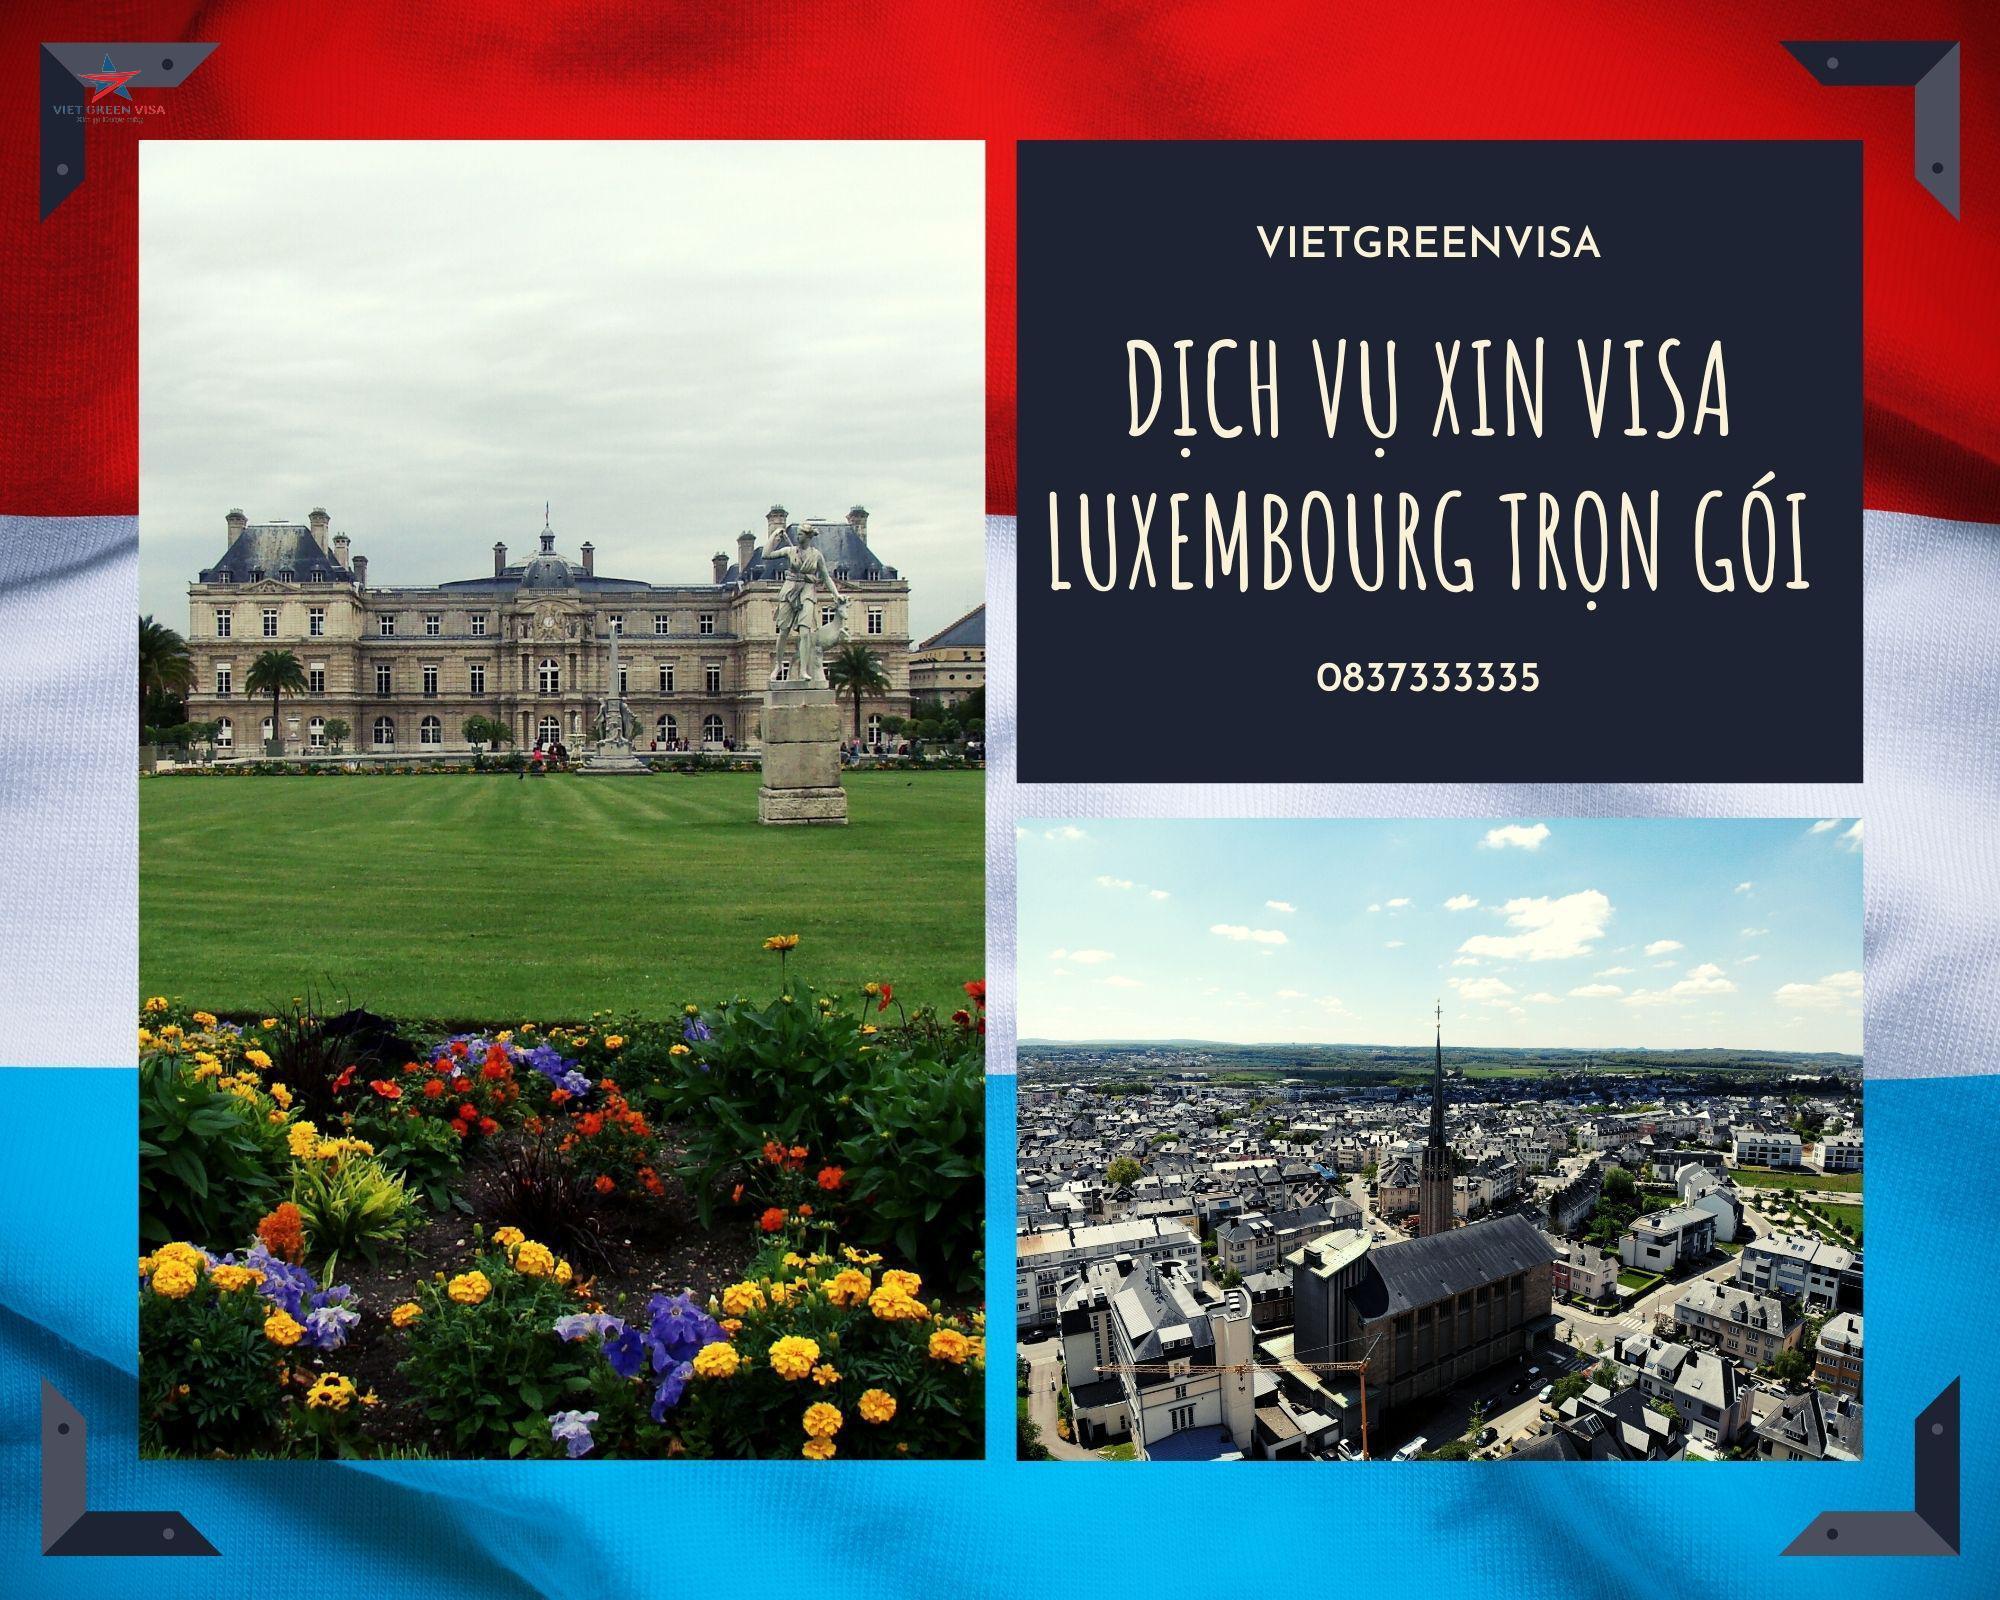 Hồ sơ cần thiết để xin Visa du lịch Luxembourg từ A-Z